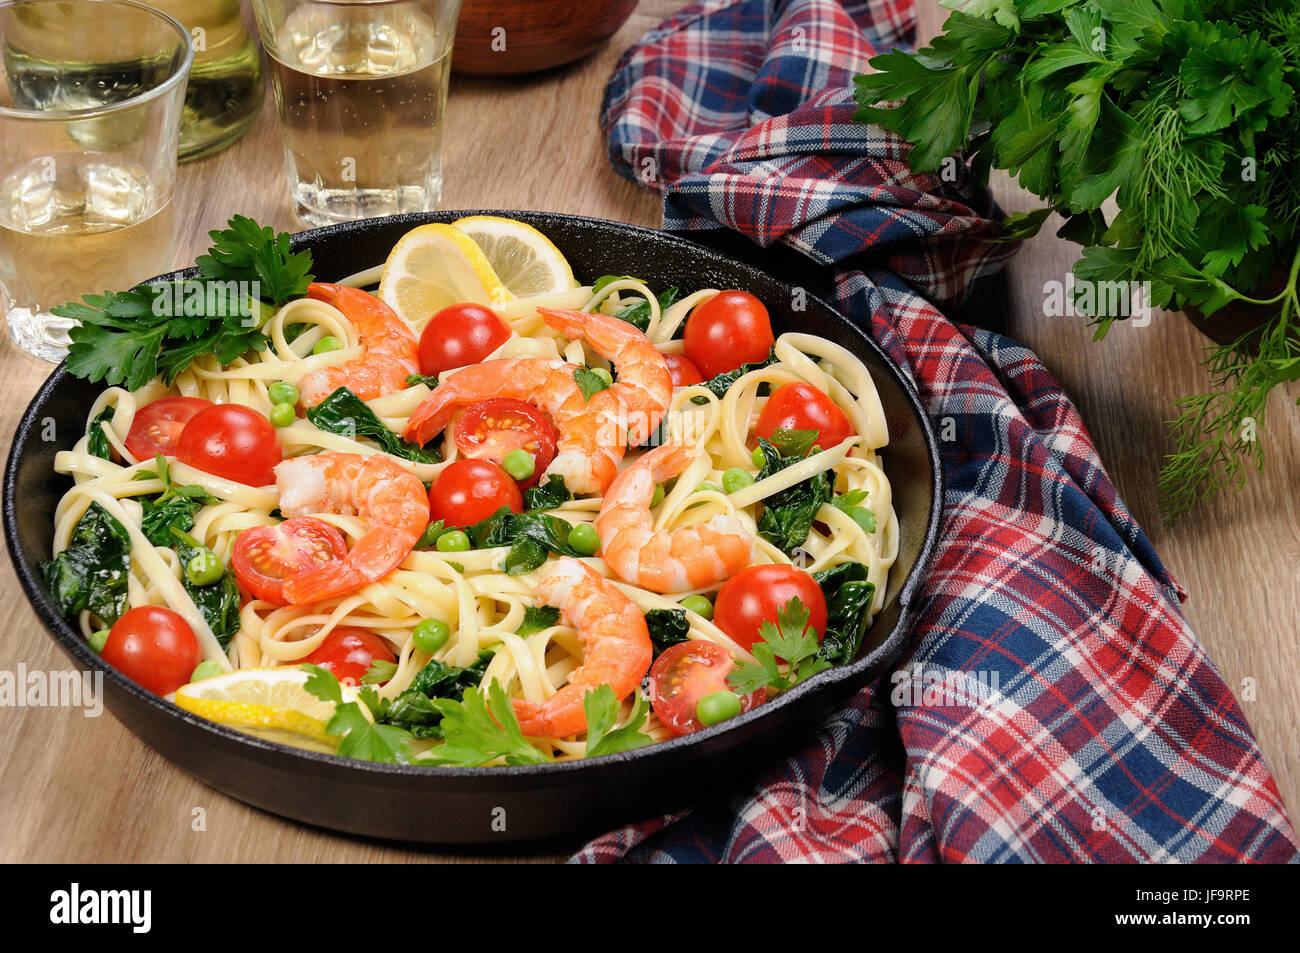 Pâtes aux crevettes frits, les pois, les tomates et les épinards dans une poêle, sur une table avec des verres de cidre. Banque D'Images